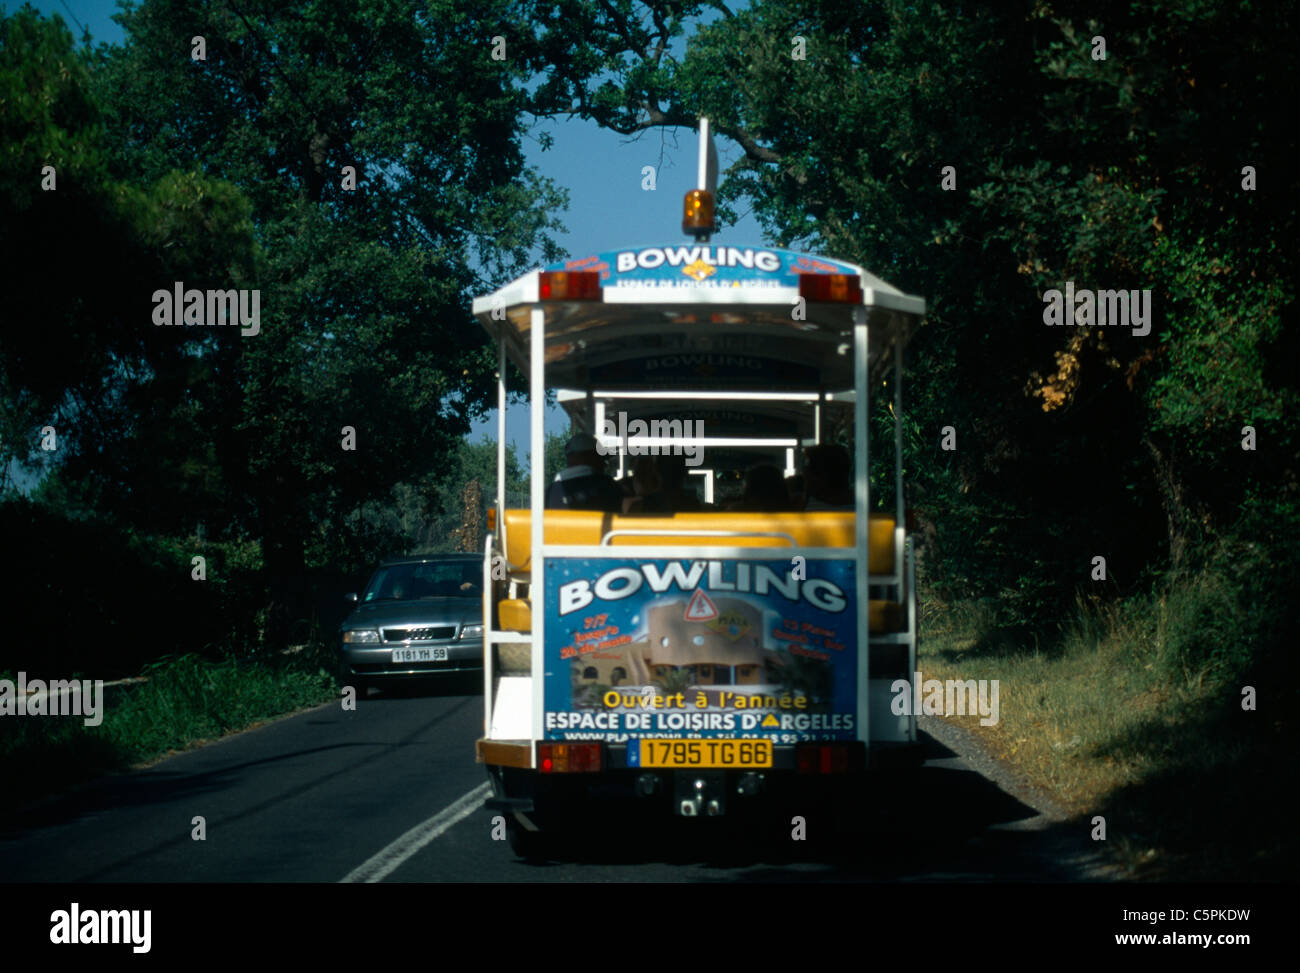 St Cyprien Frankreich Languadoc & Roussillon Anzeige auf der Rückseite eines Busses Stockfoto